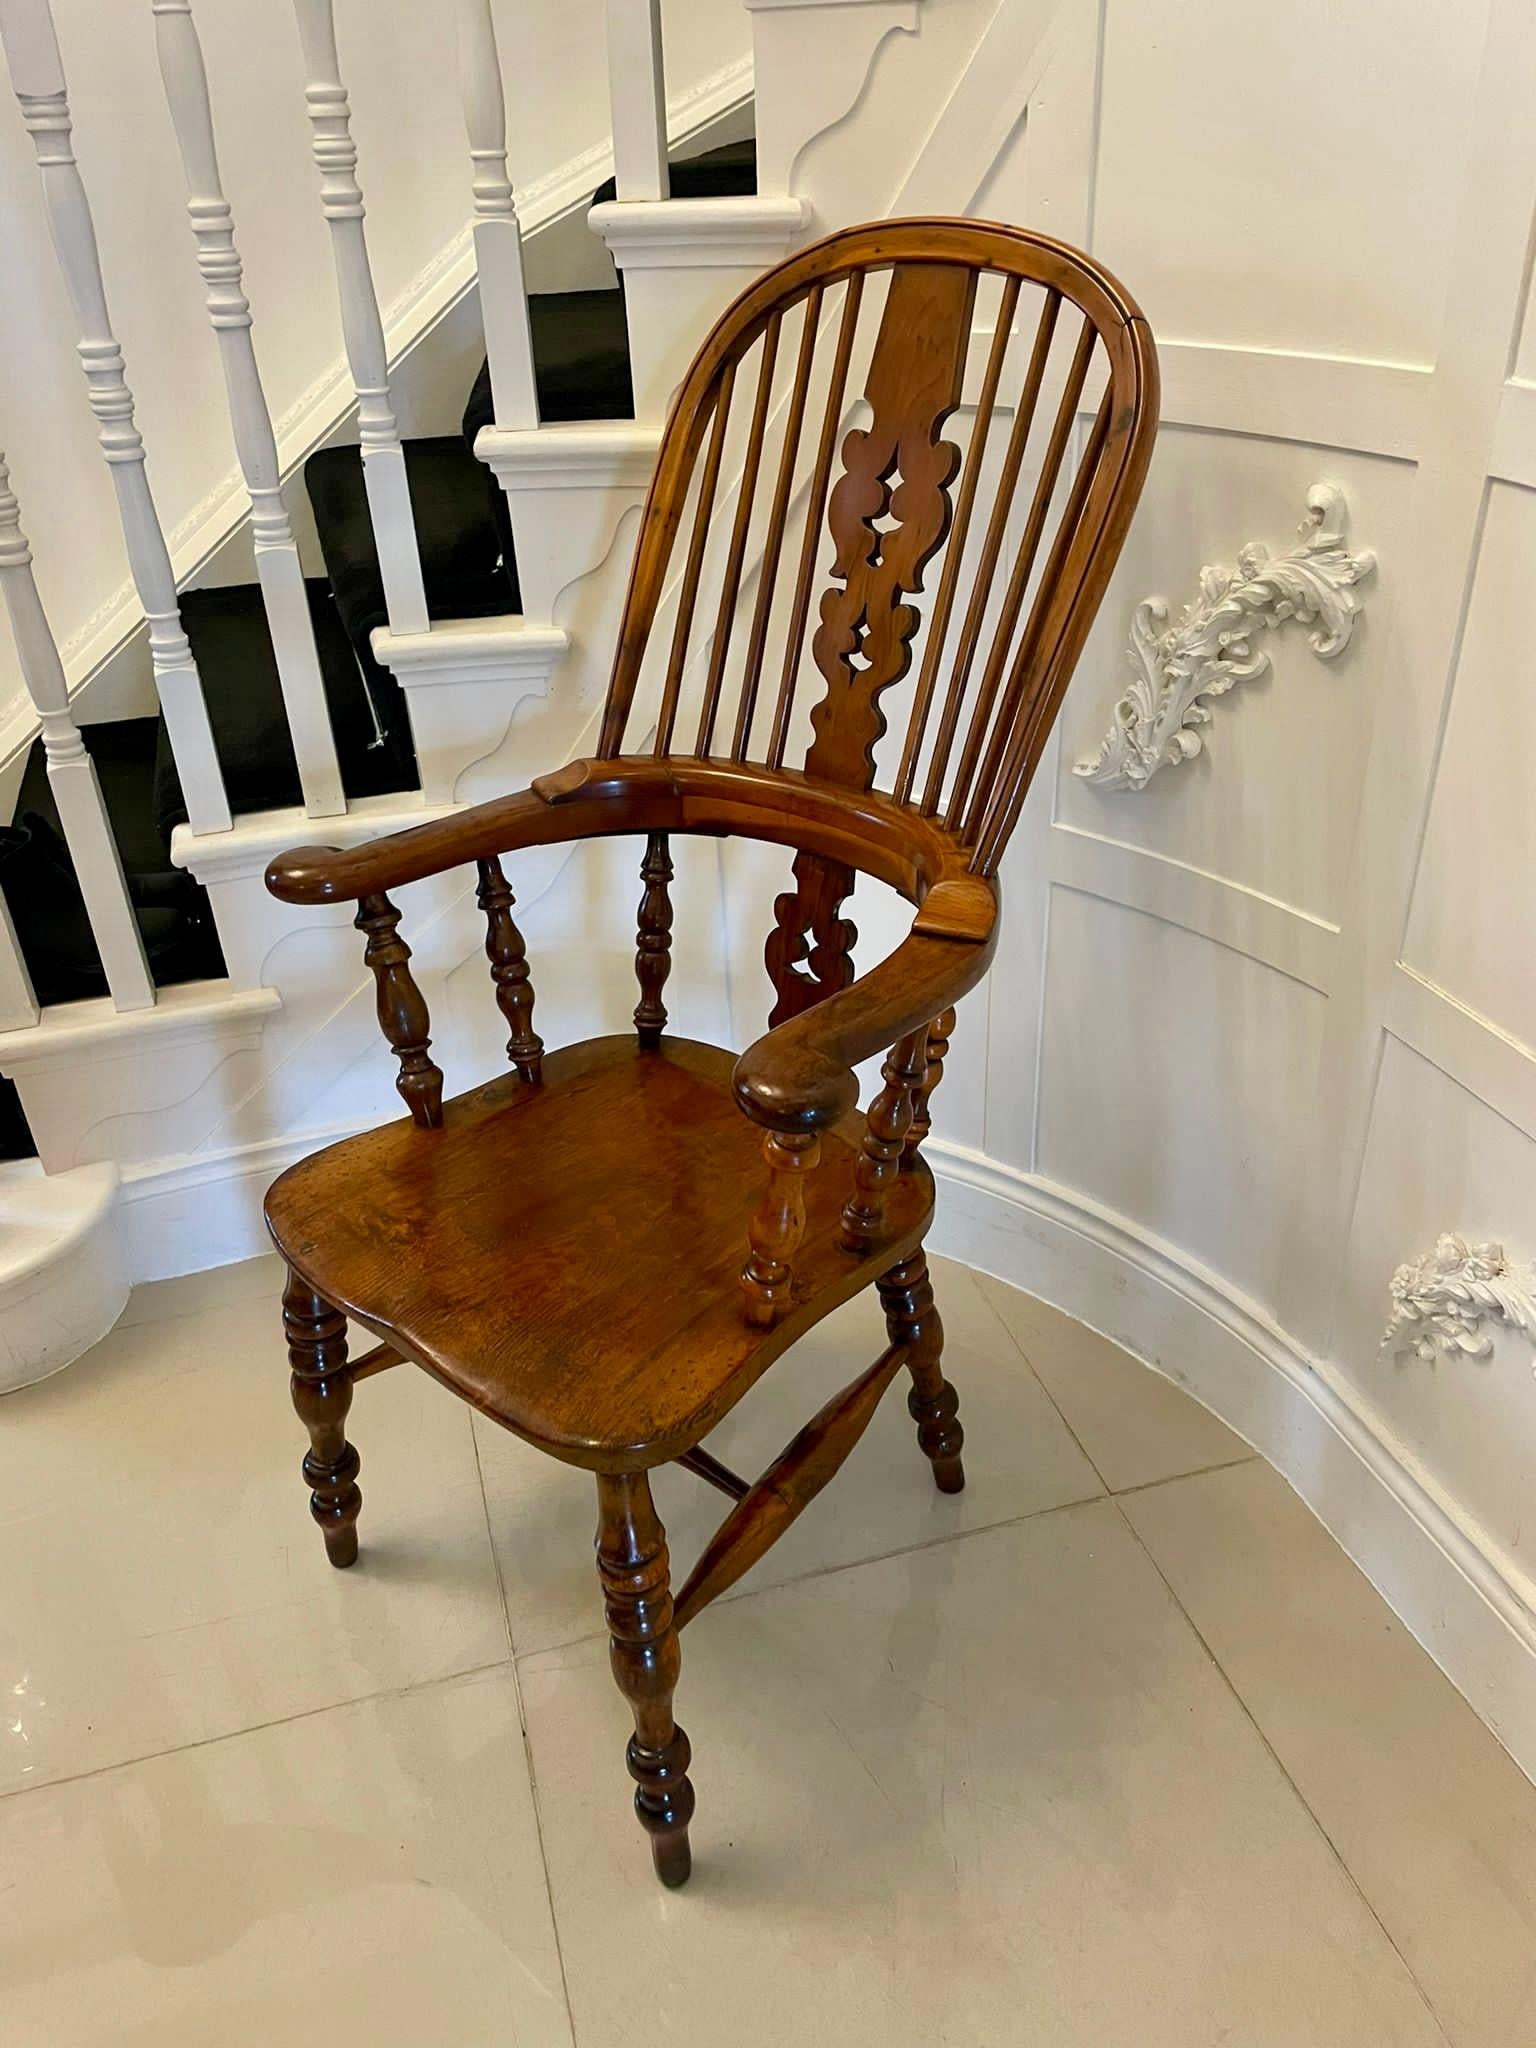 Ancienne chaise Windsor à larges accoudoirs en bois d'if de qualité victorienne, avec des colonnes et des fuseaux tournés en bois d'if, un dossier en forme avec des accoudoirs en volute, un siège en orme et reposant sur des pieds tournés en bois